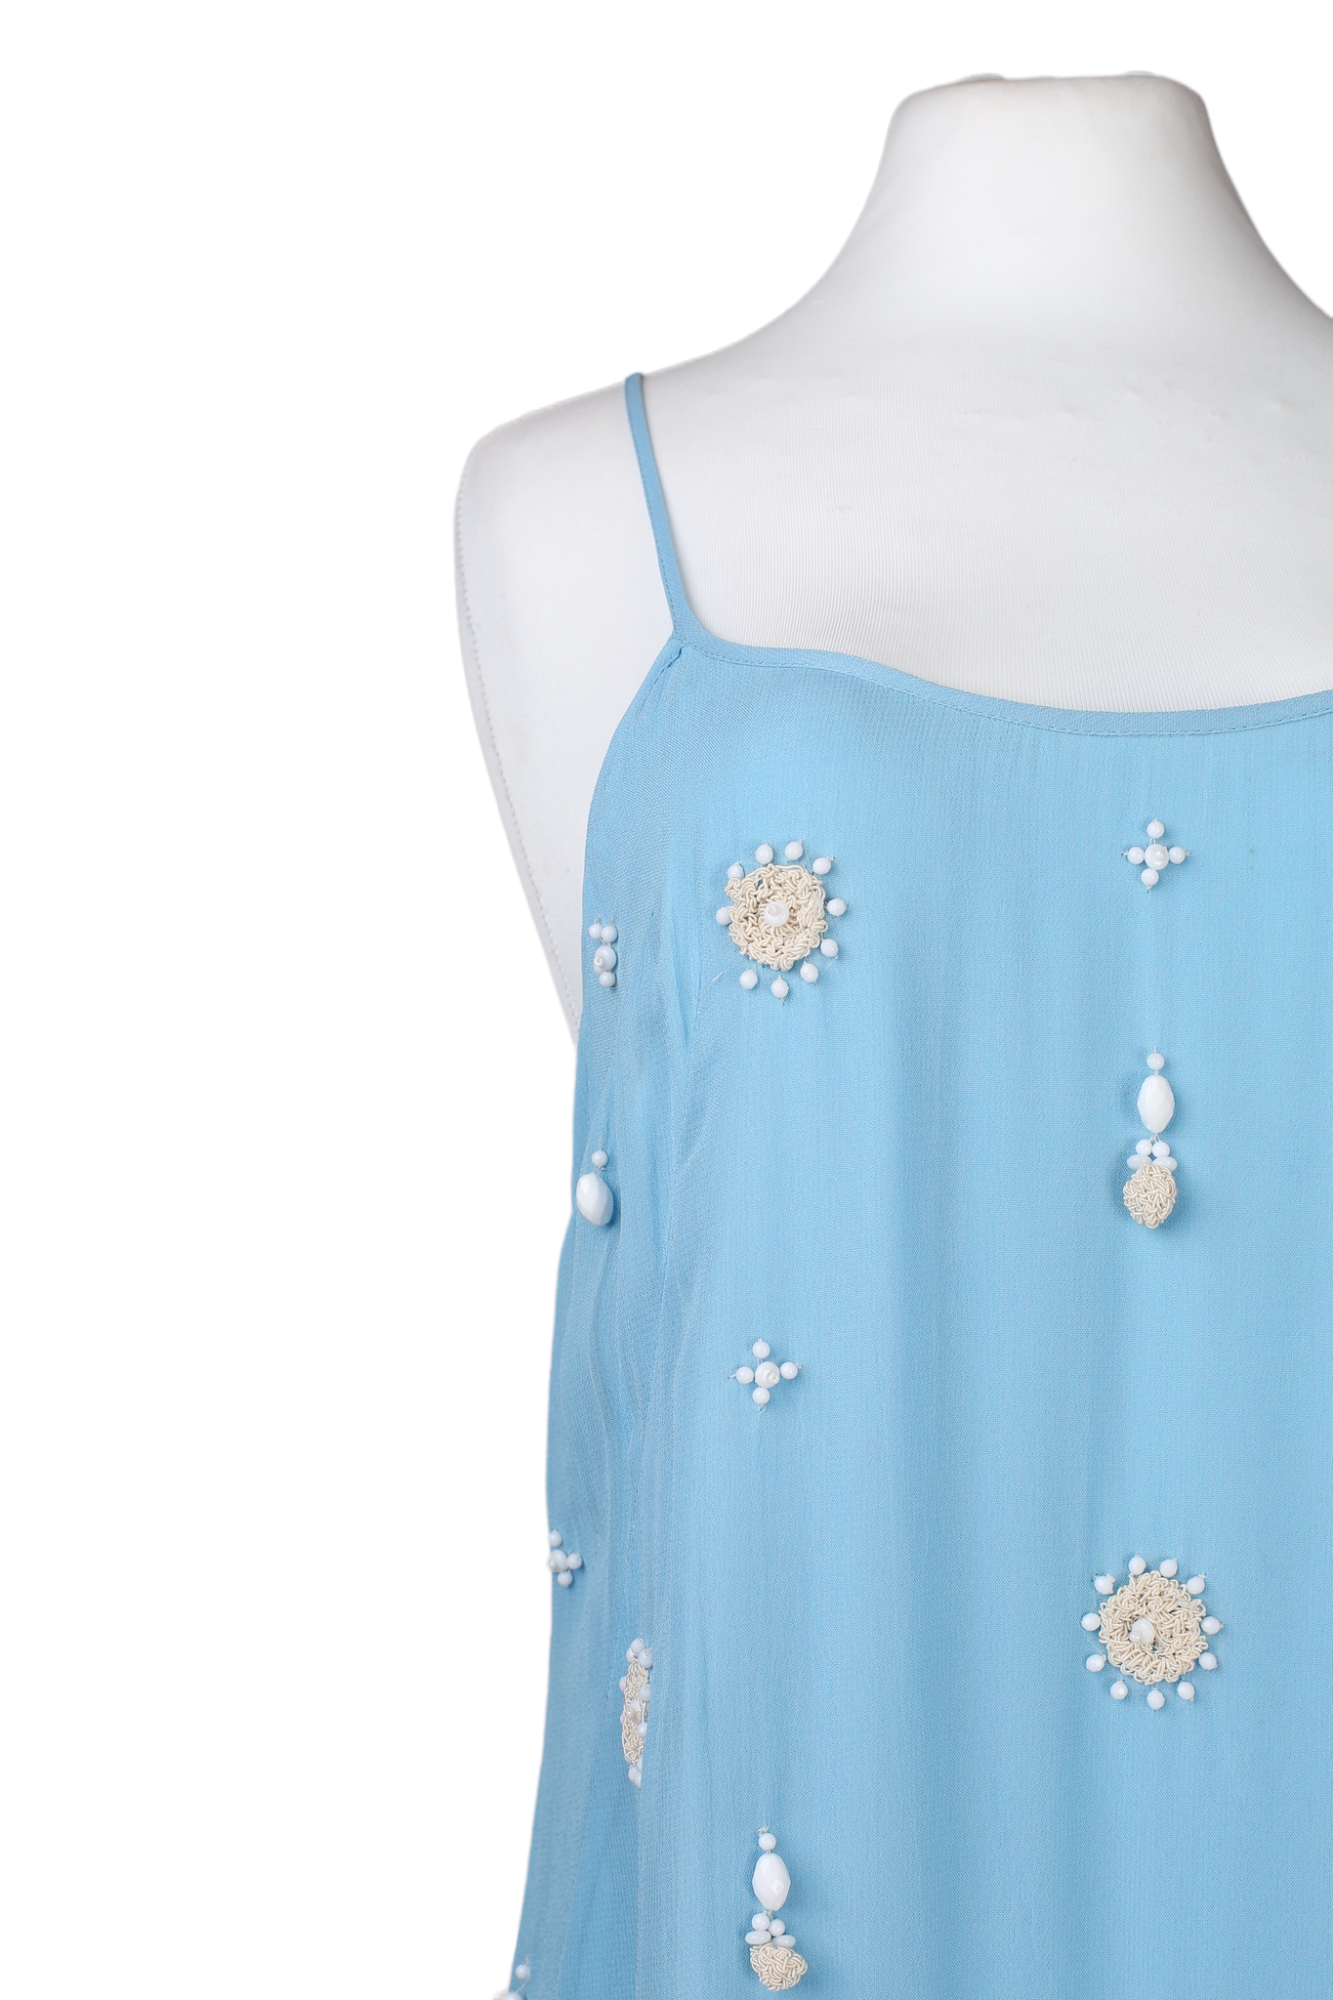 فستان صيفي قصير مع تطريز من متجر فرينش كونيكشن